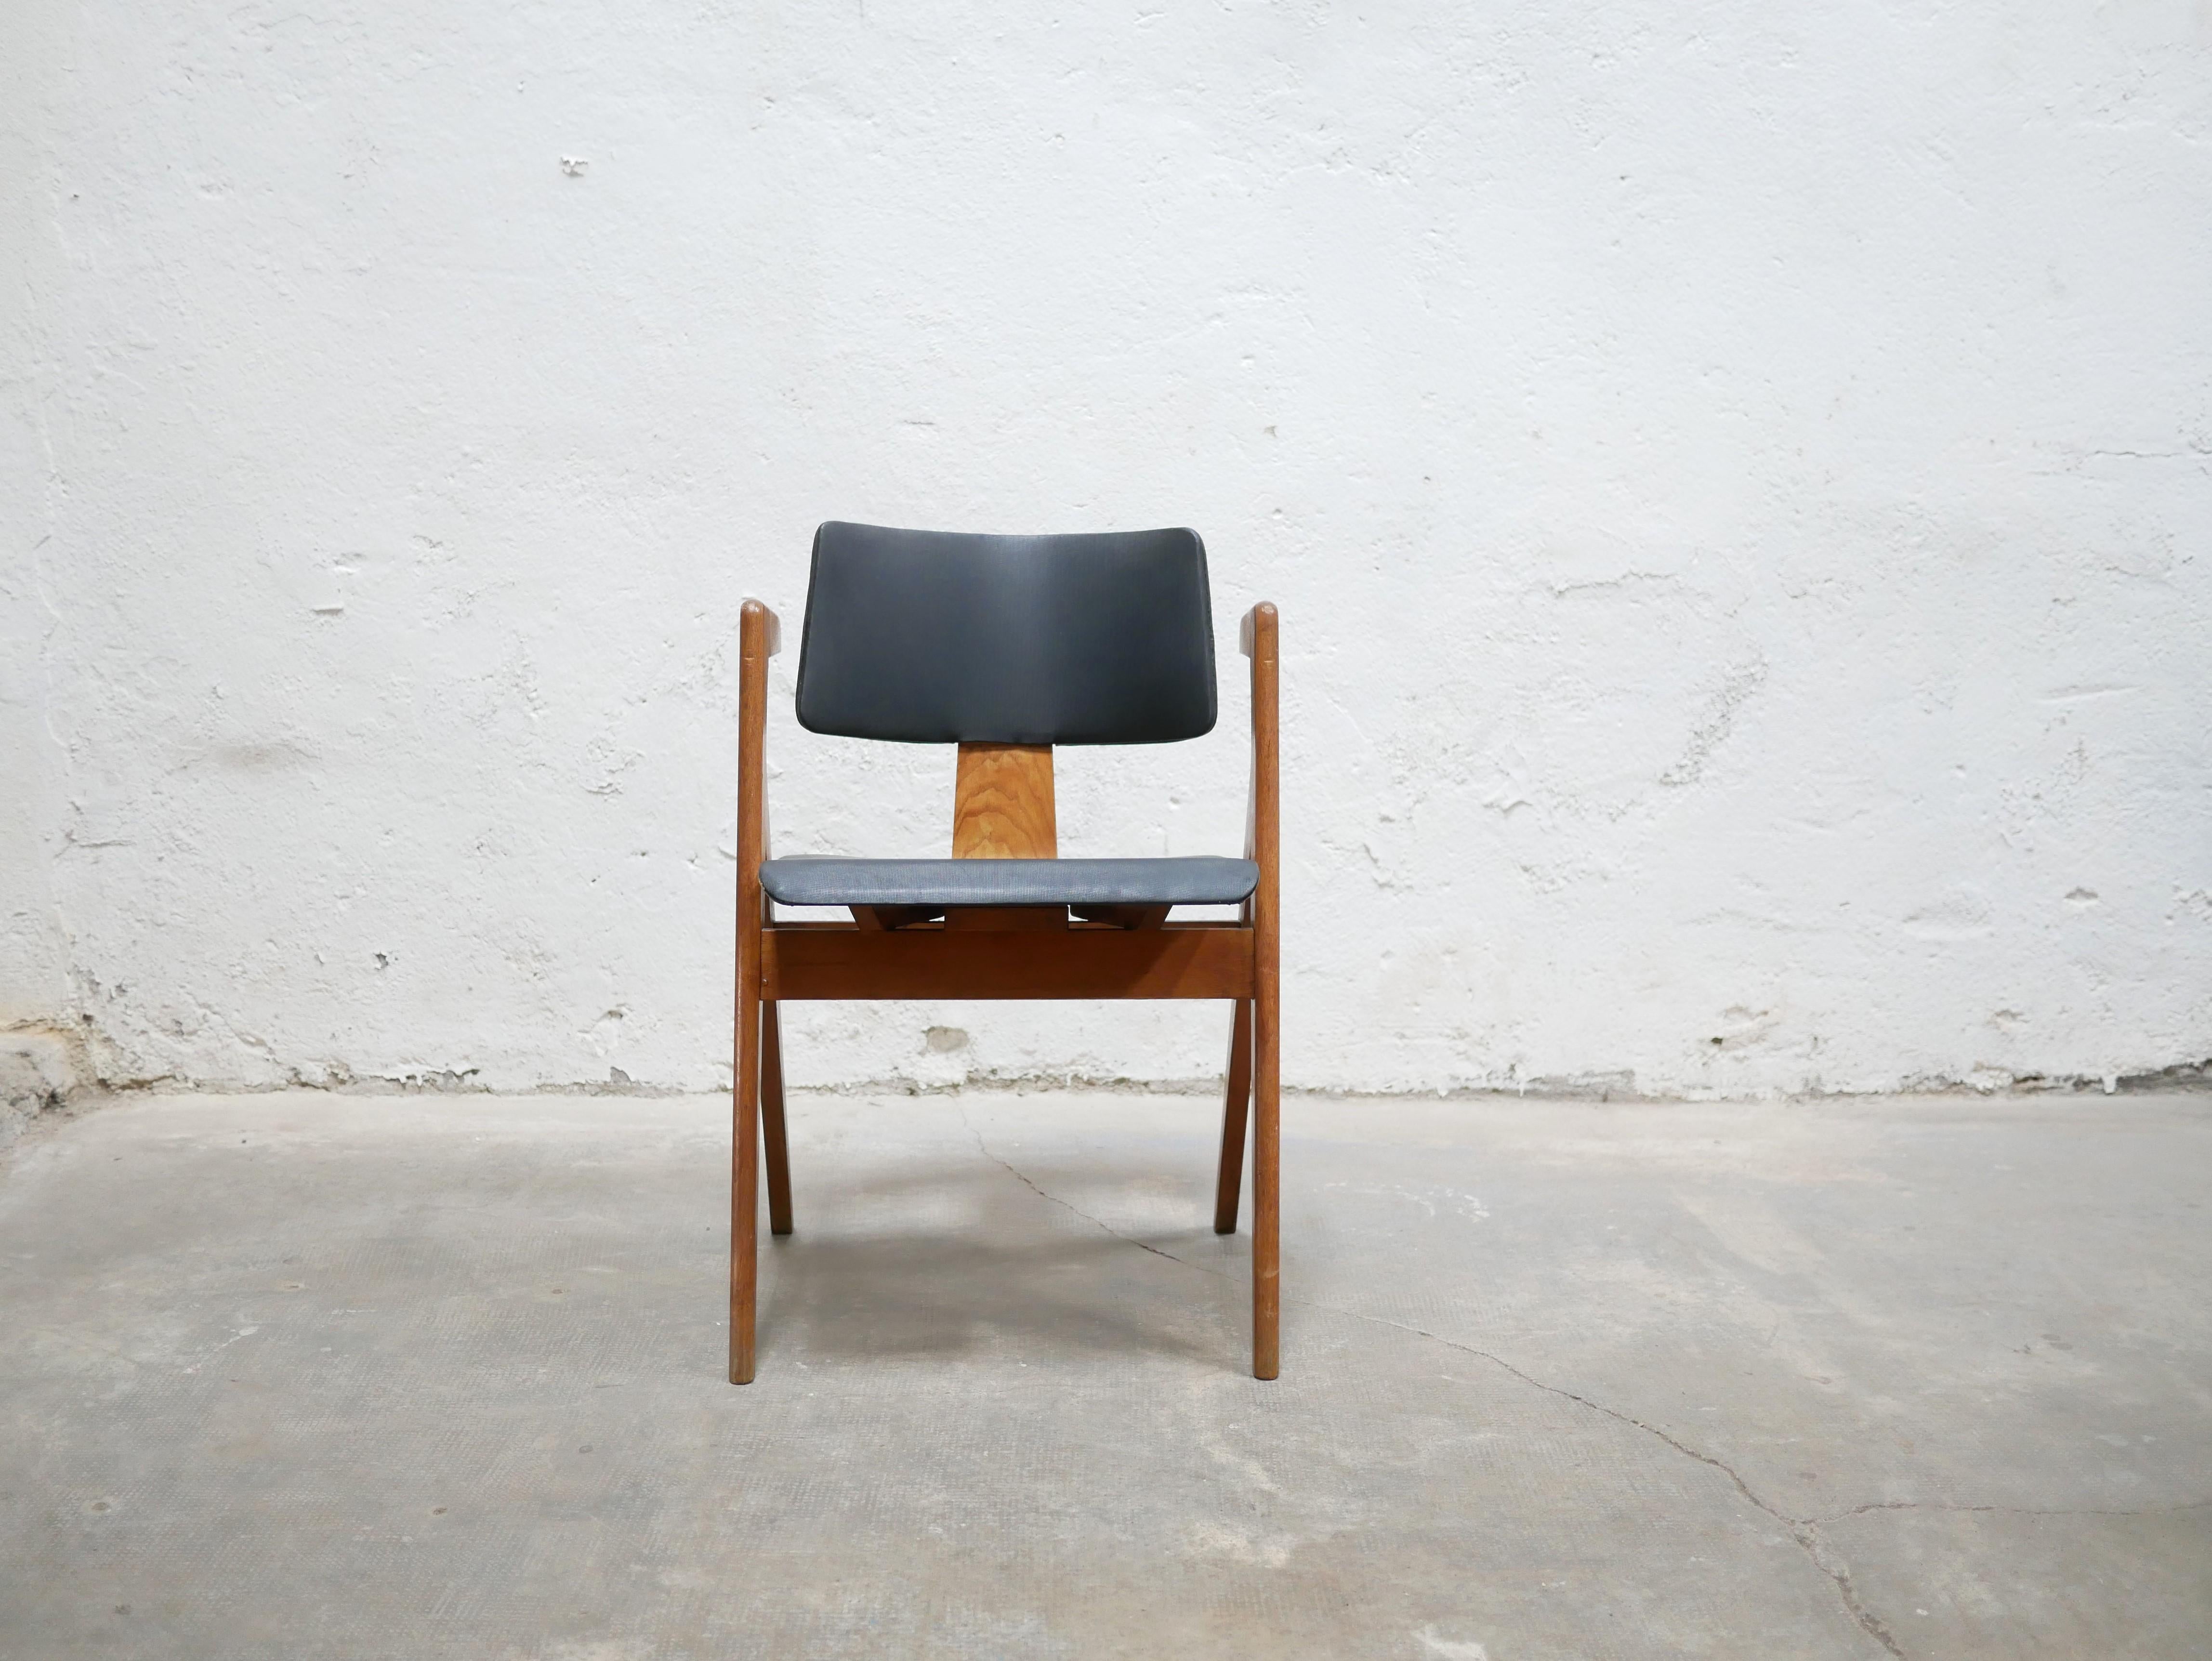 Sessel, Modell Hillestak, entworfen von den englischen Designern Lucienne und Robin Day für Hille International Editions in den 1950er Jahren.

Der ästhetische, designorientierte und bequeme Sessel fügt sich perfekt in eine aktuelle und trendige